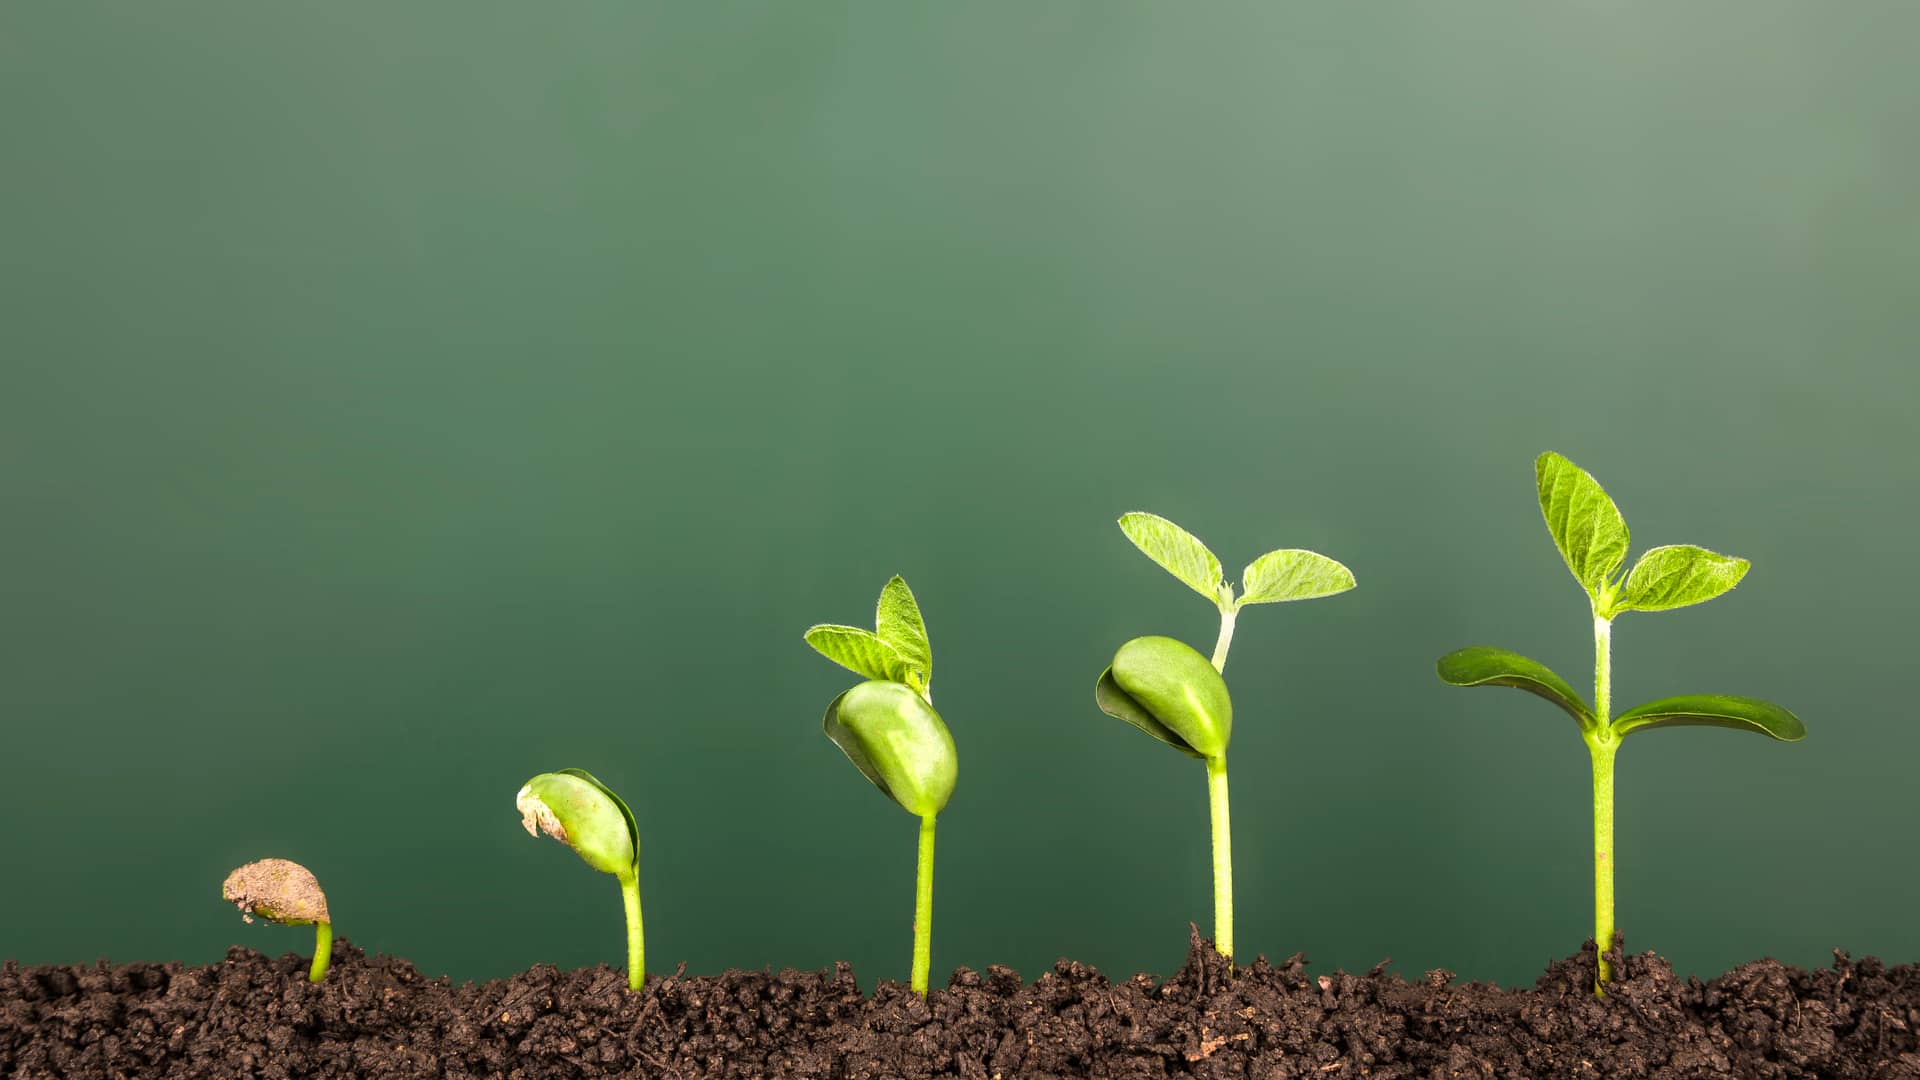 Planta en diferentes estados de crecimiento representa un seguro de ahorro para mantener el crecimiento de tus ahorros